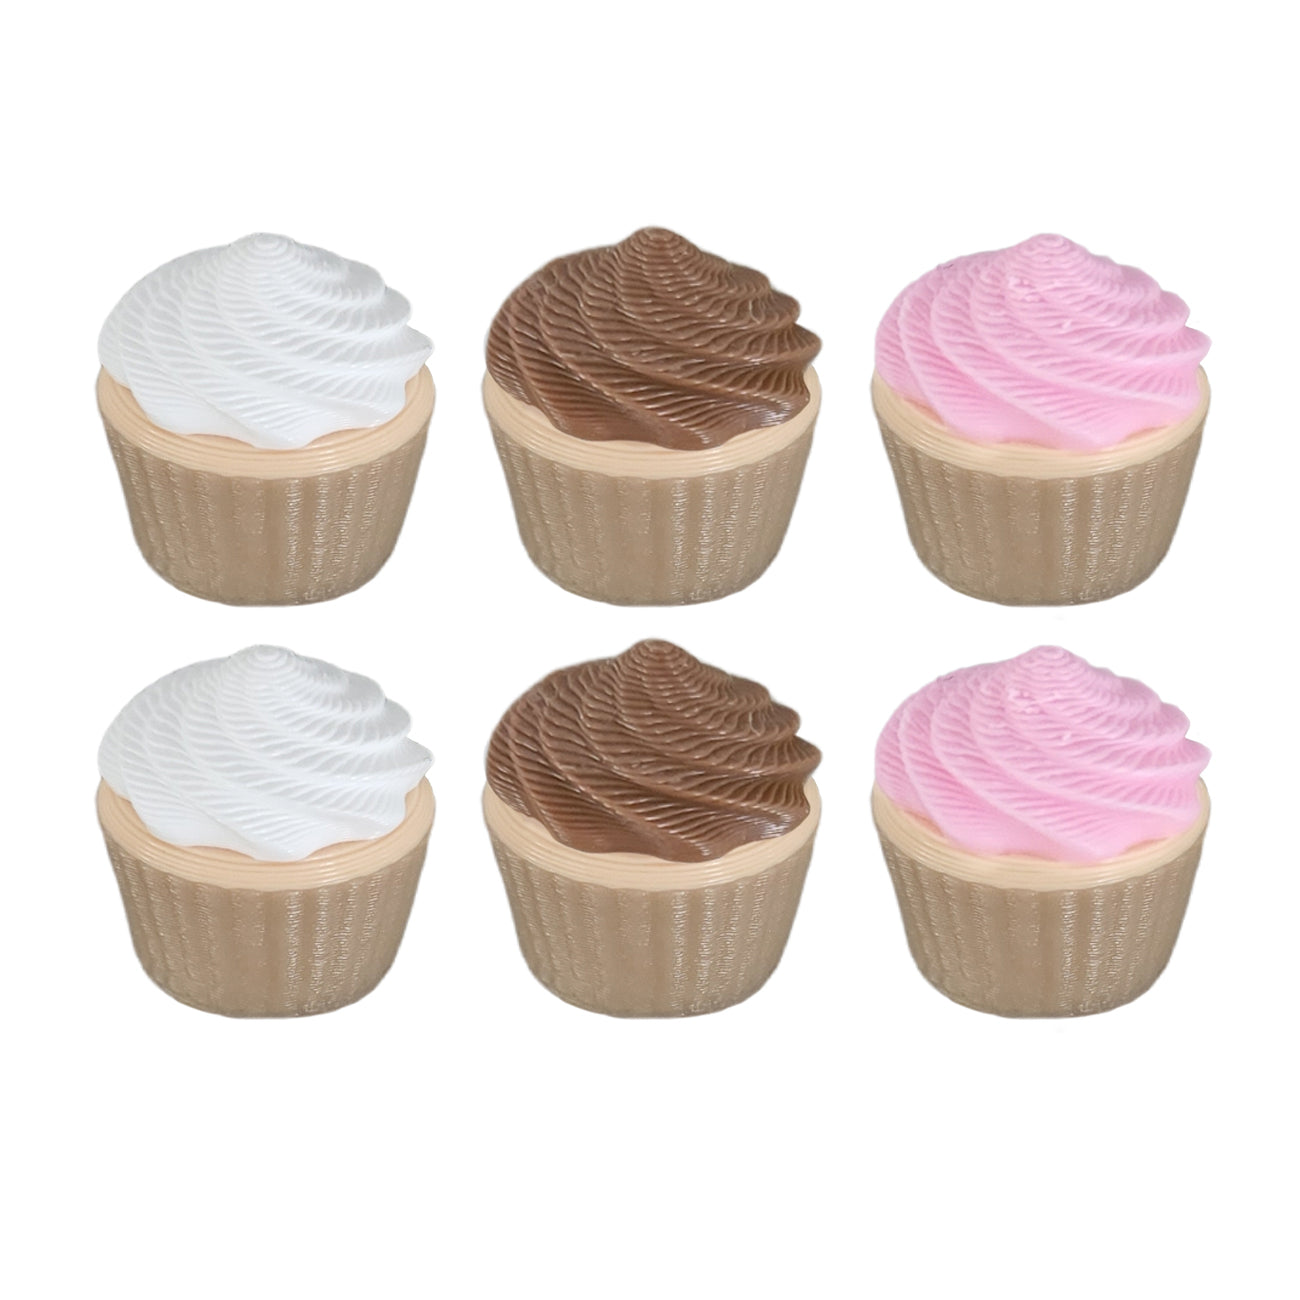 elf cupcakes, miniature pink, chocolate and vanilla swirls